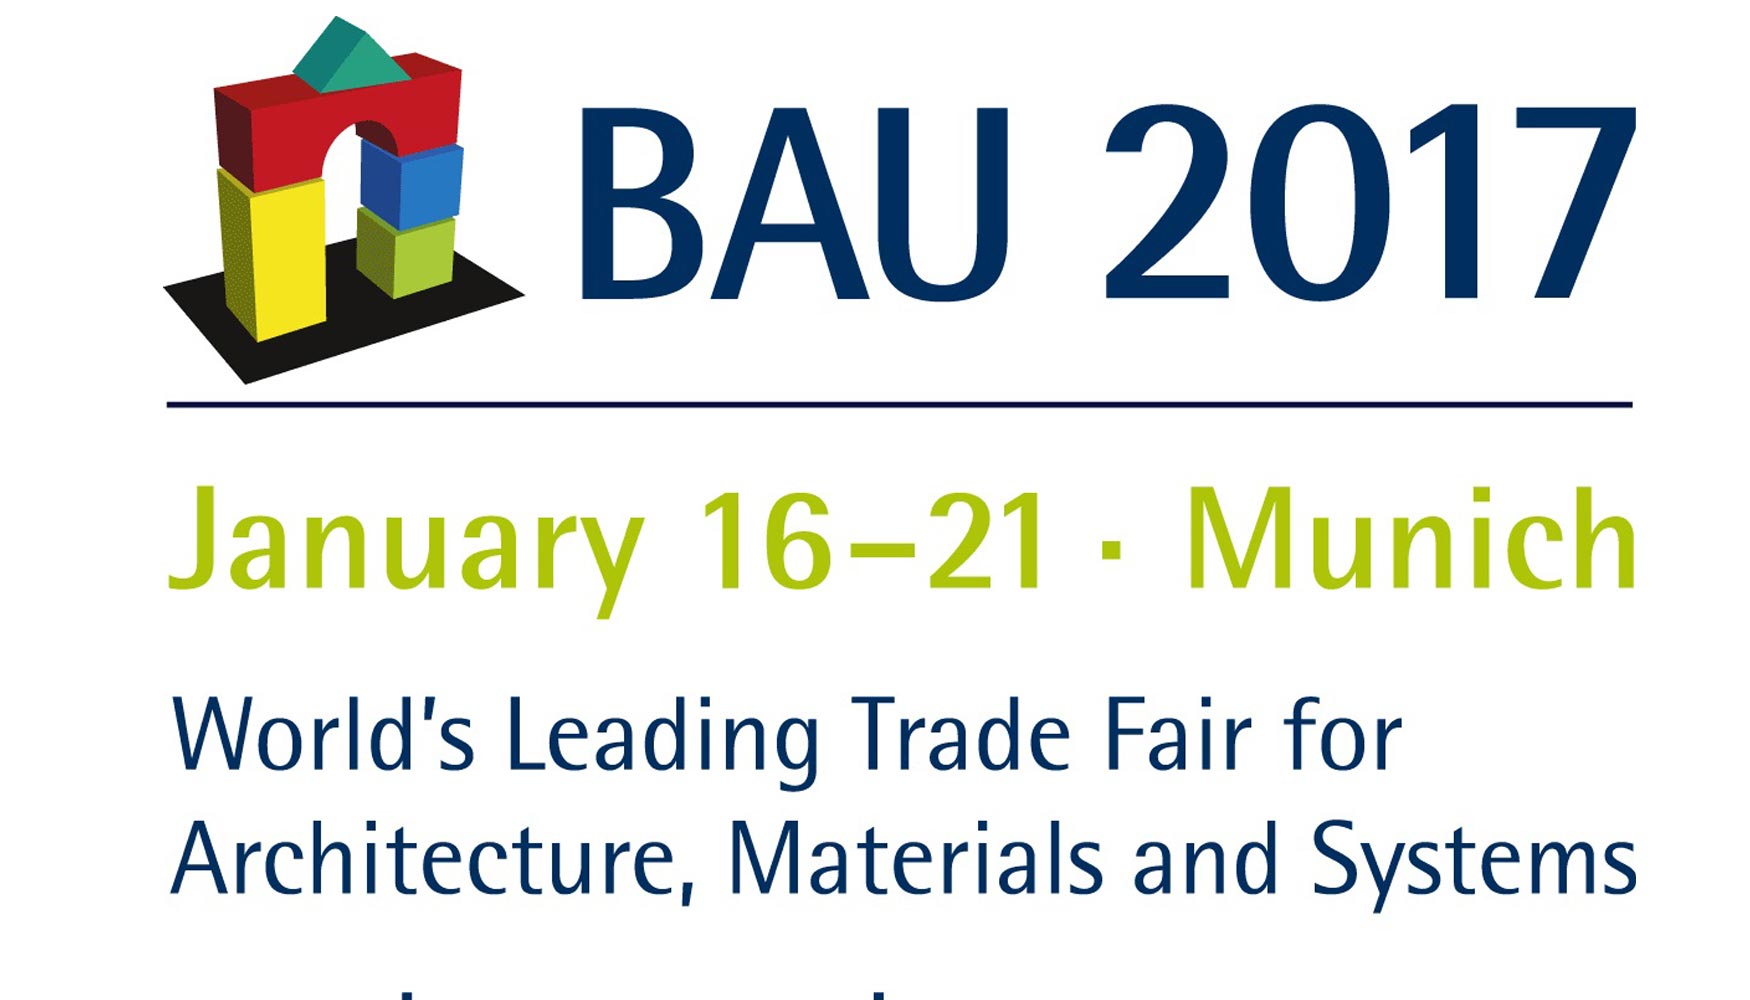 El logotipo de BAU 2017